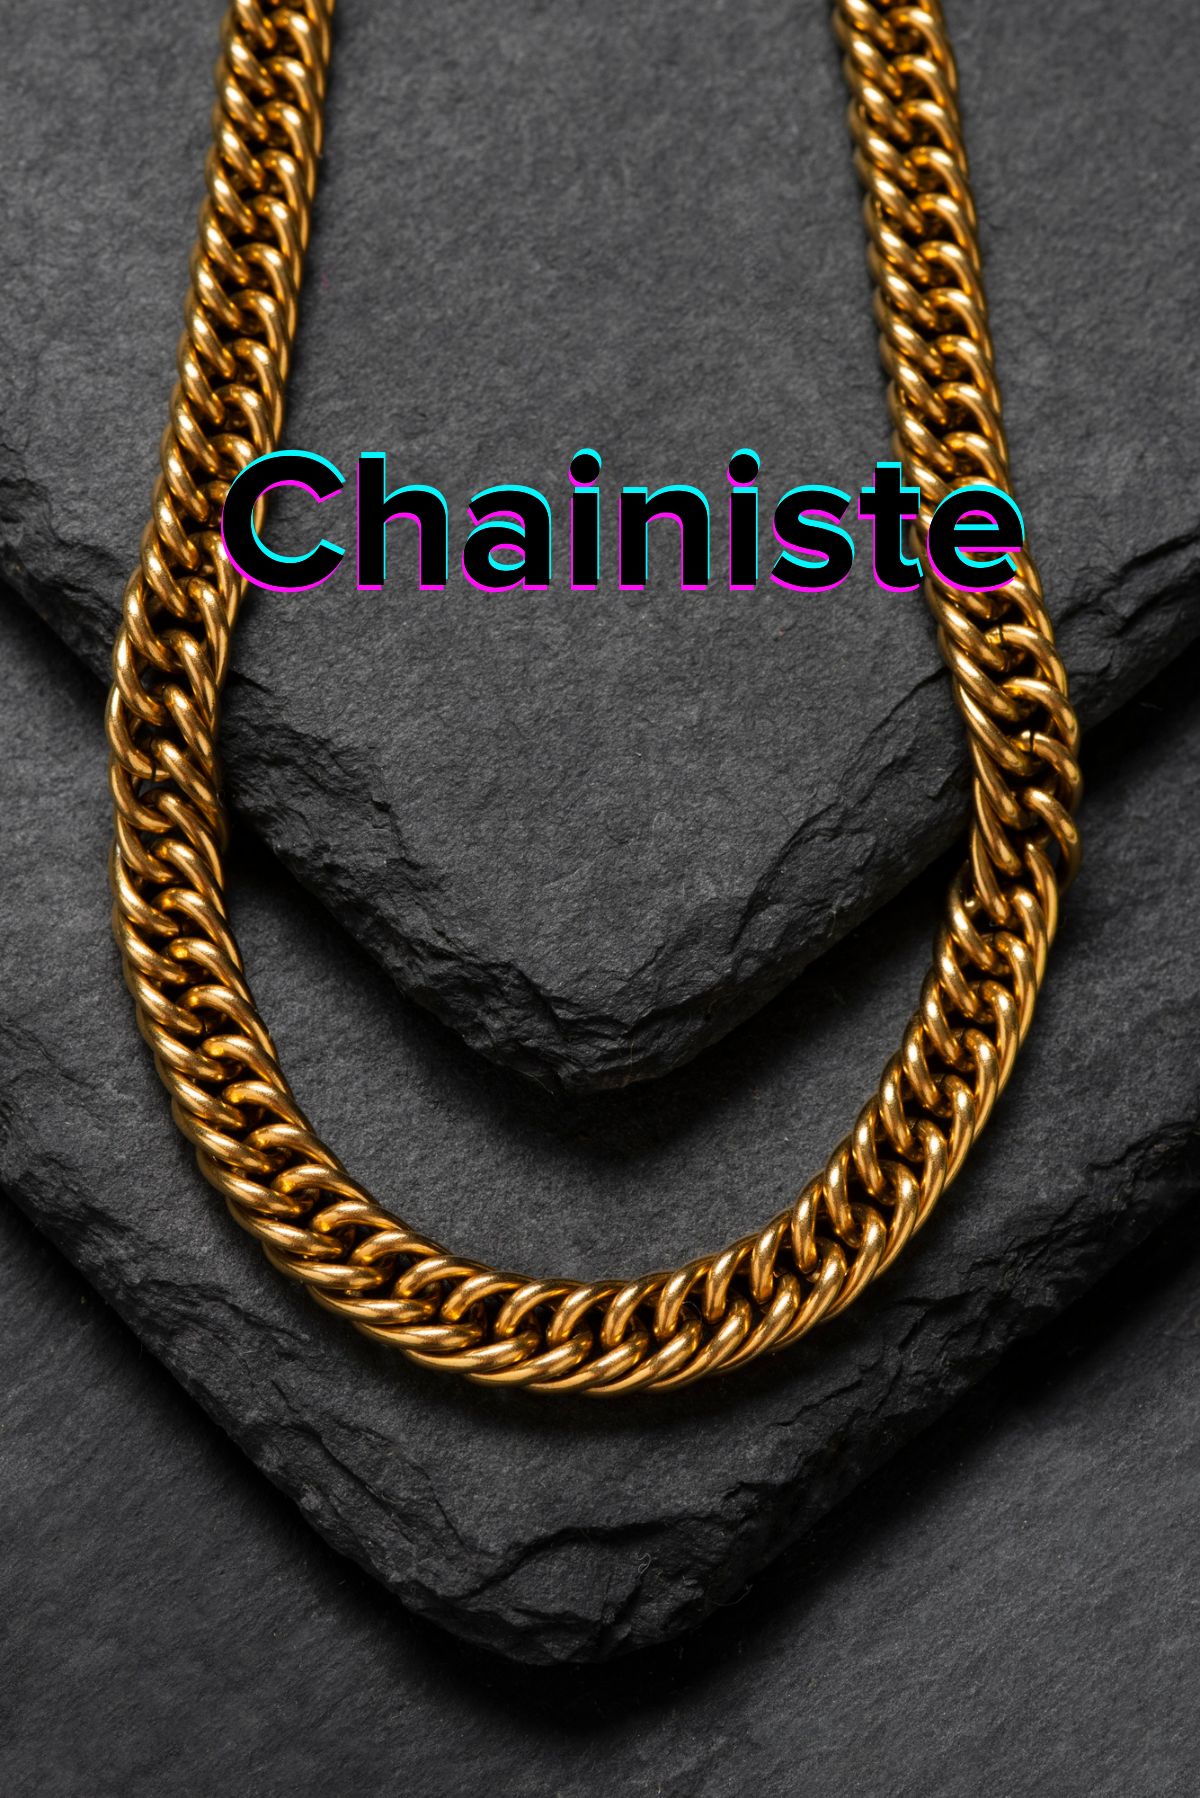 Chainiste